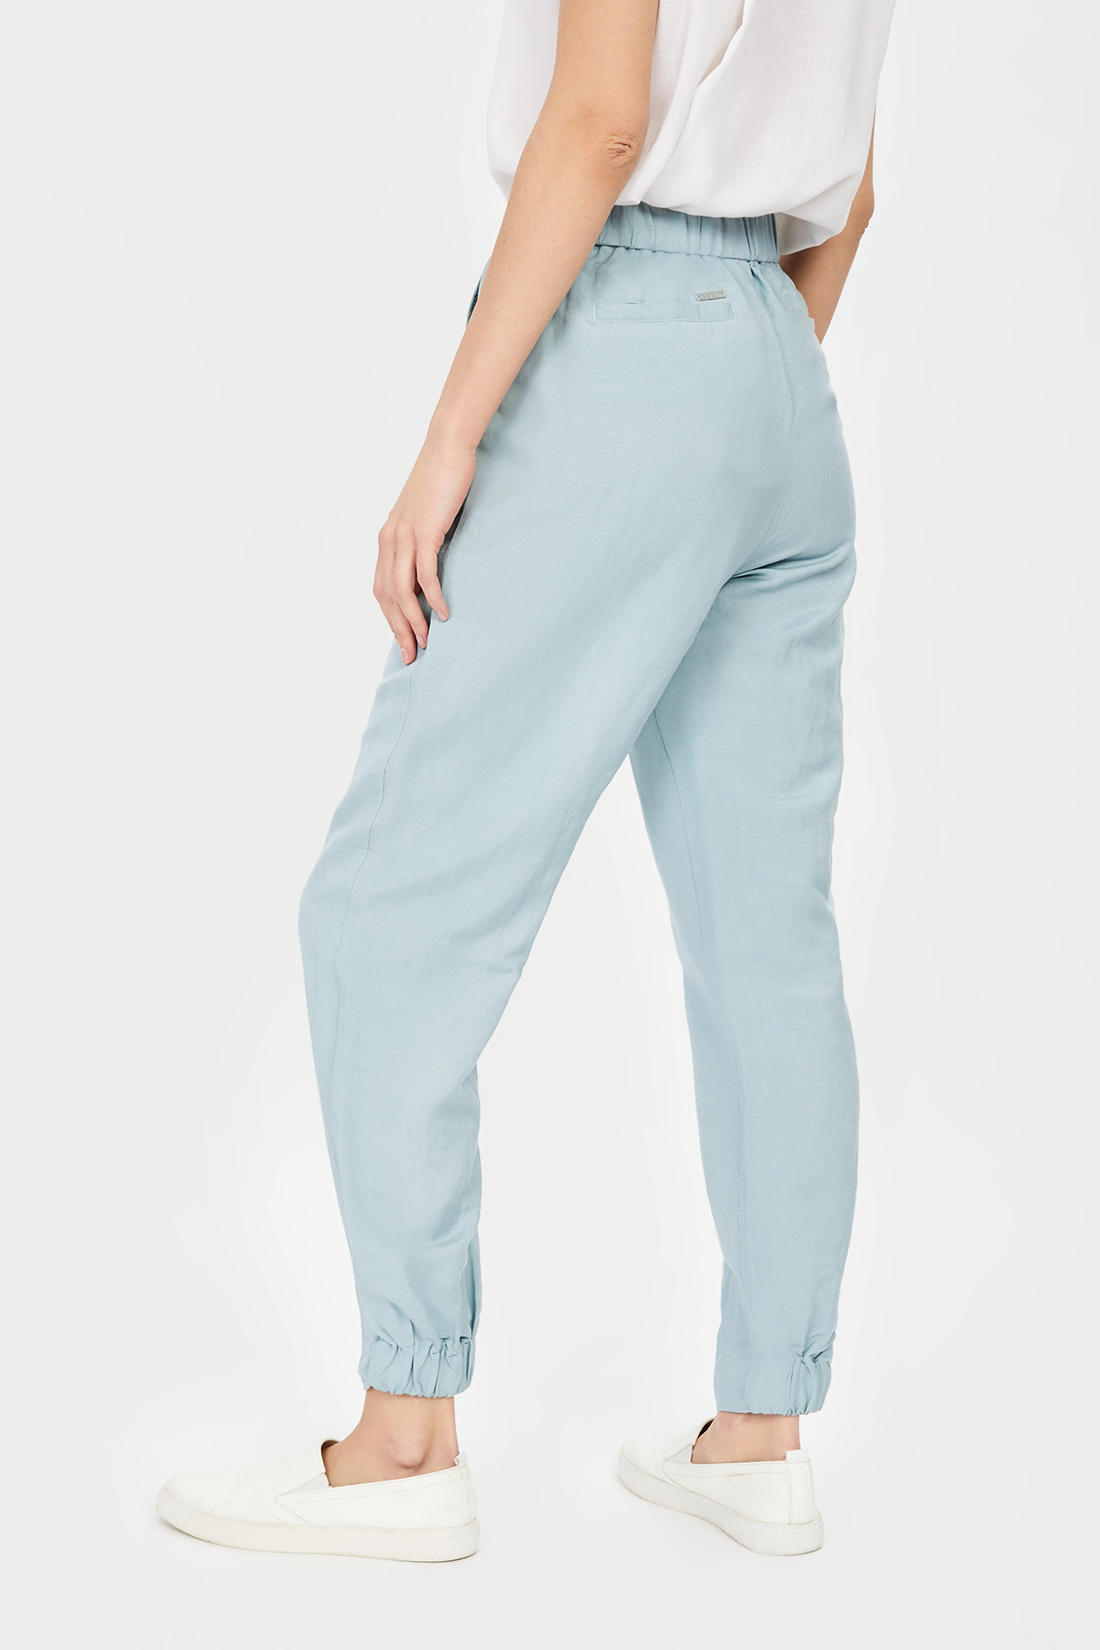 Спортивные брюки женские Baon B291029 голубые 2XL